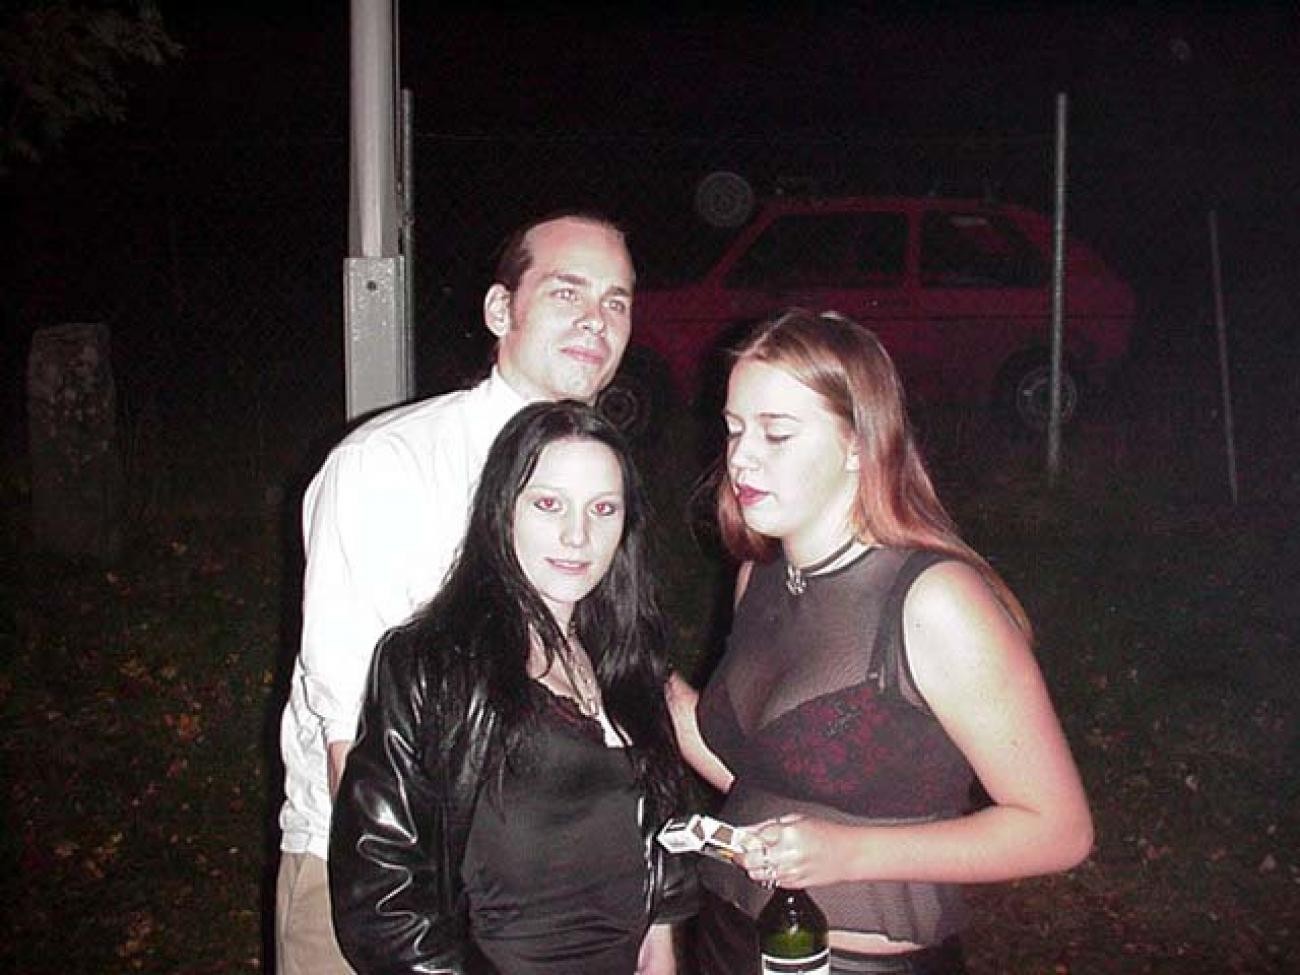 Chicas góticas en una fiesta salvaje y traviesa
 #77133923